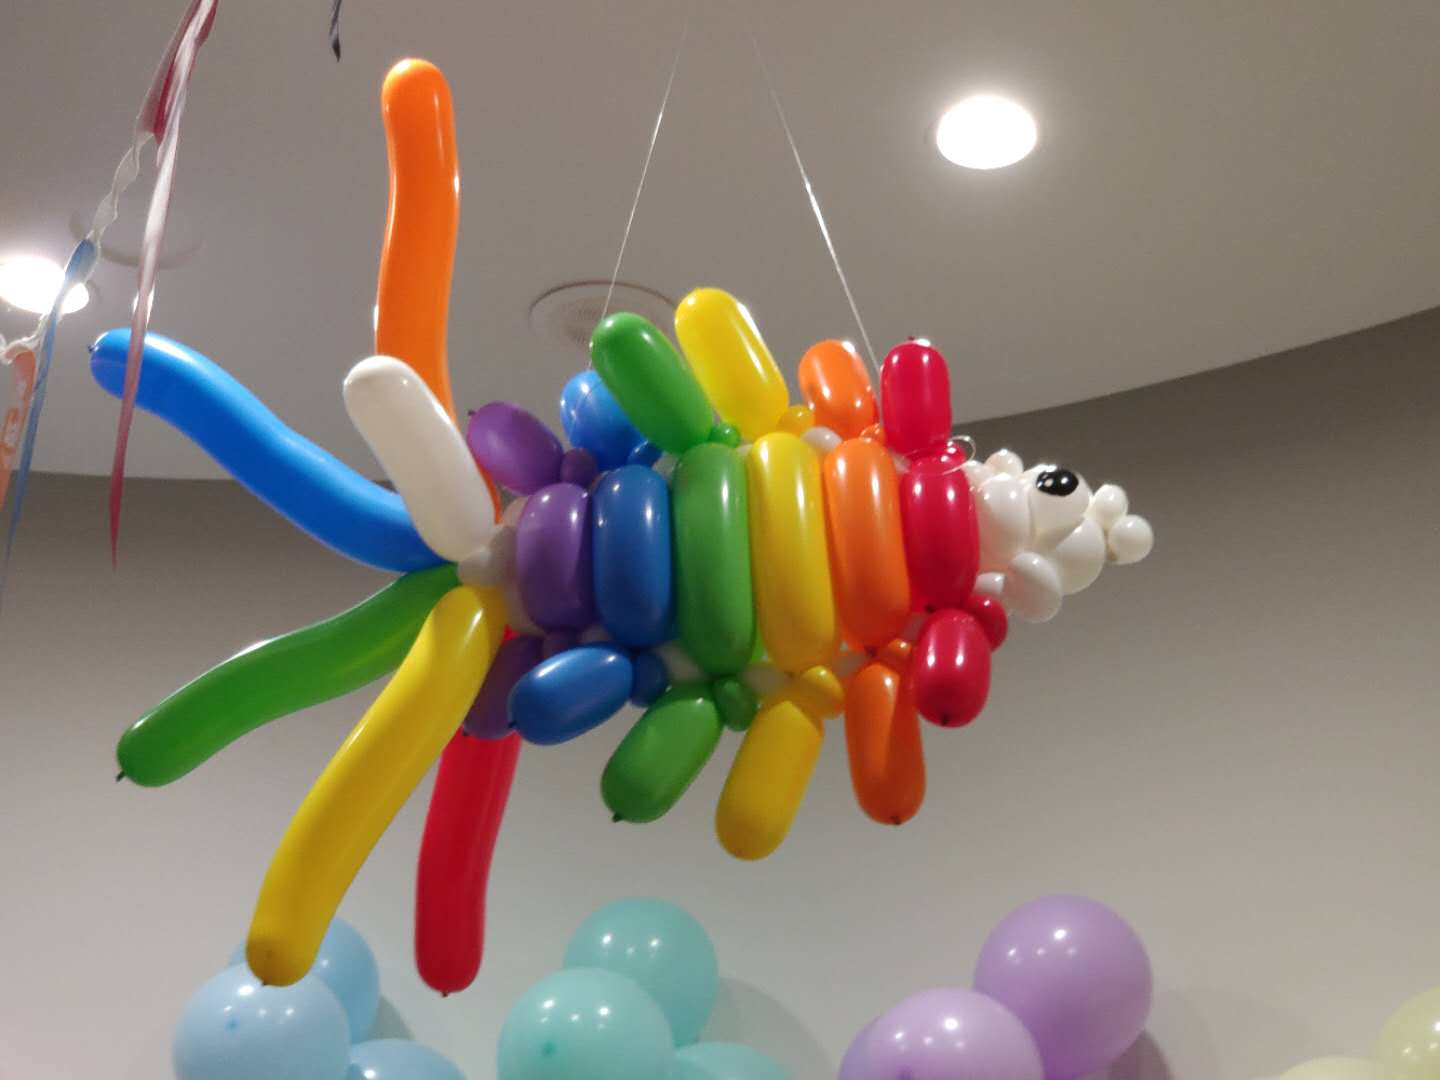 塔城立柱租赁 客户至上 乌鲁木齐百川天和气球装饰艺术供应